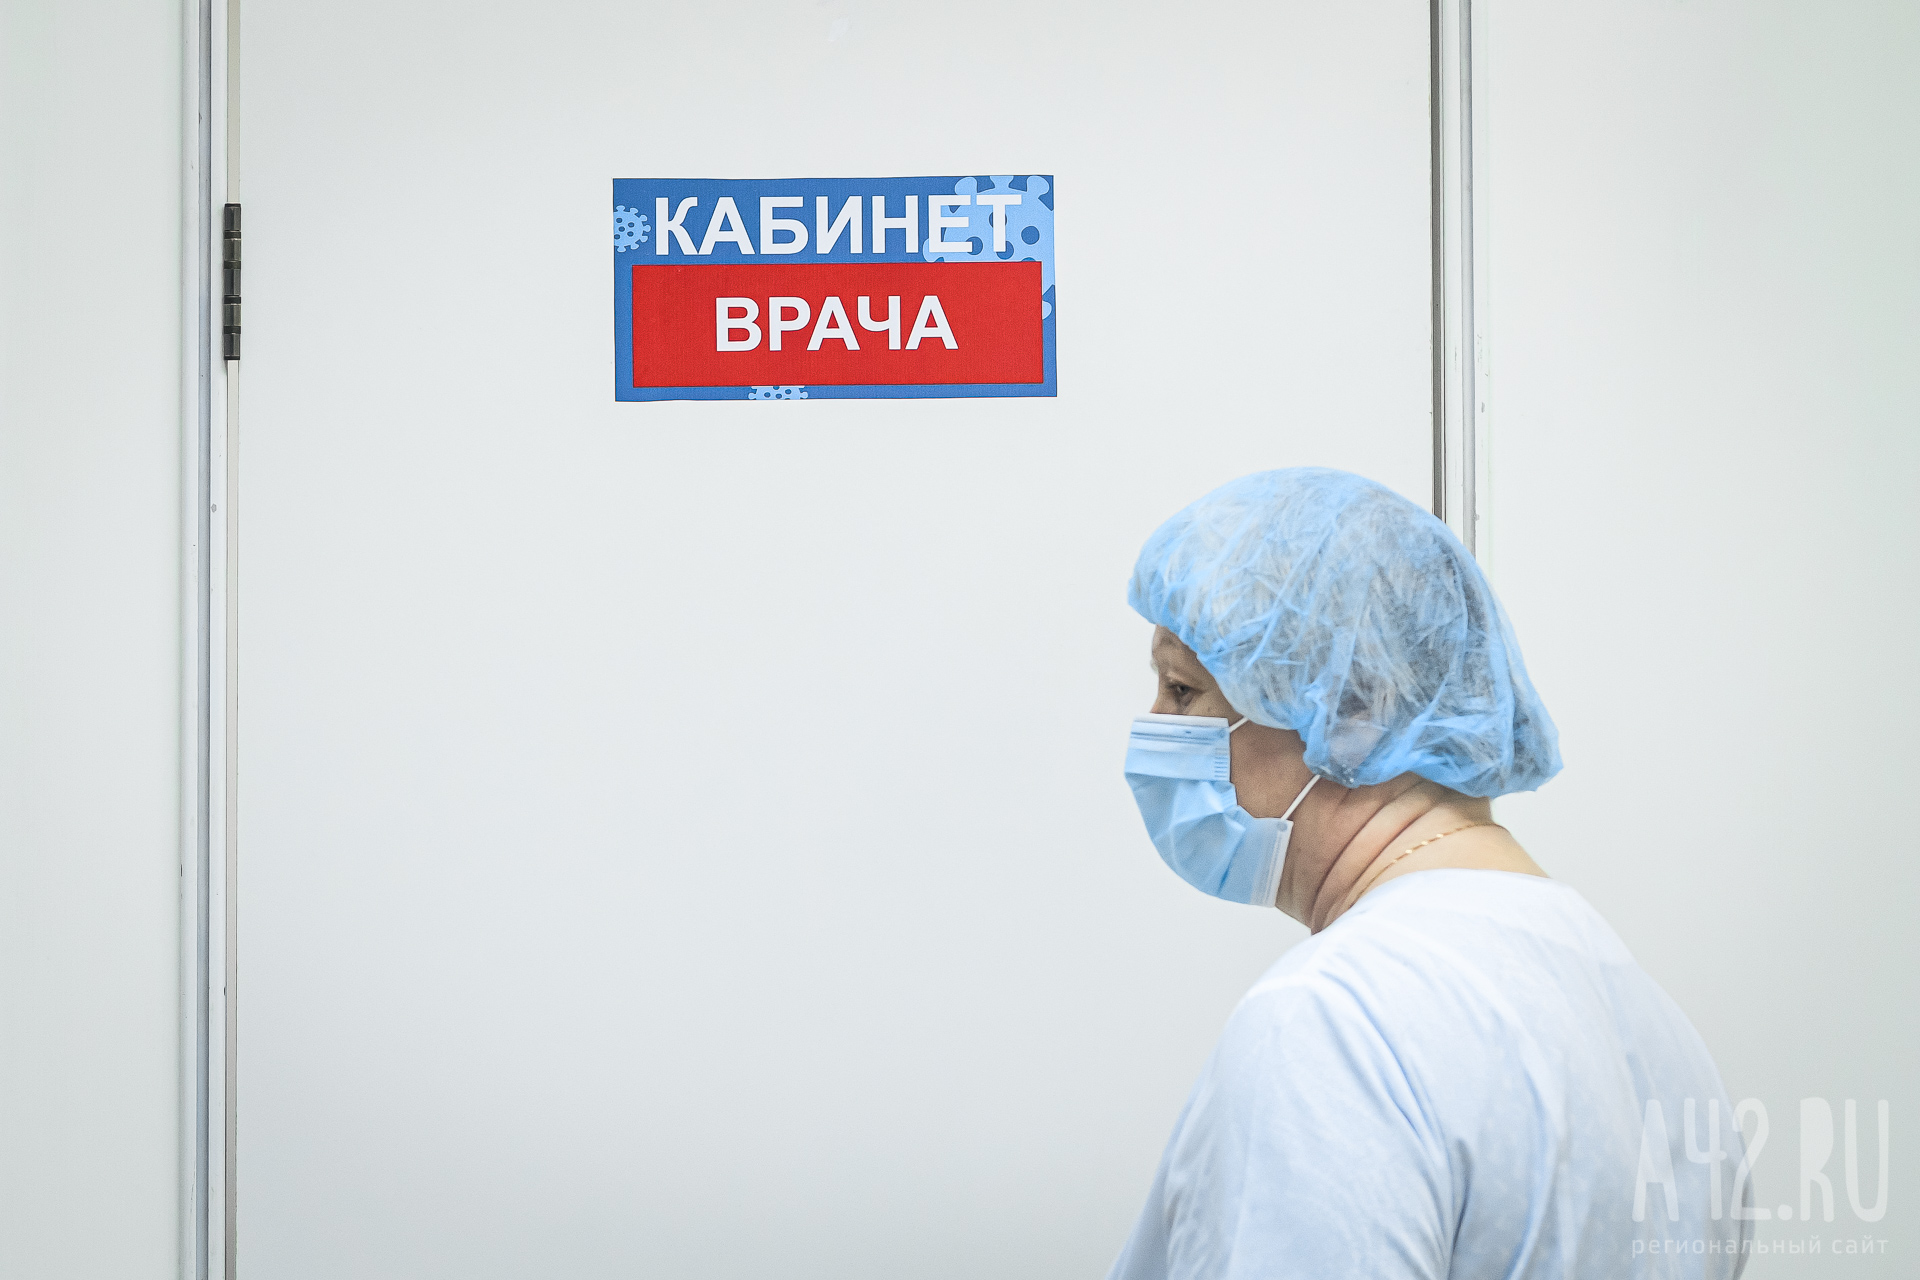 36 курсантов института в Екатеринбурге попали в больницу с отравлением